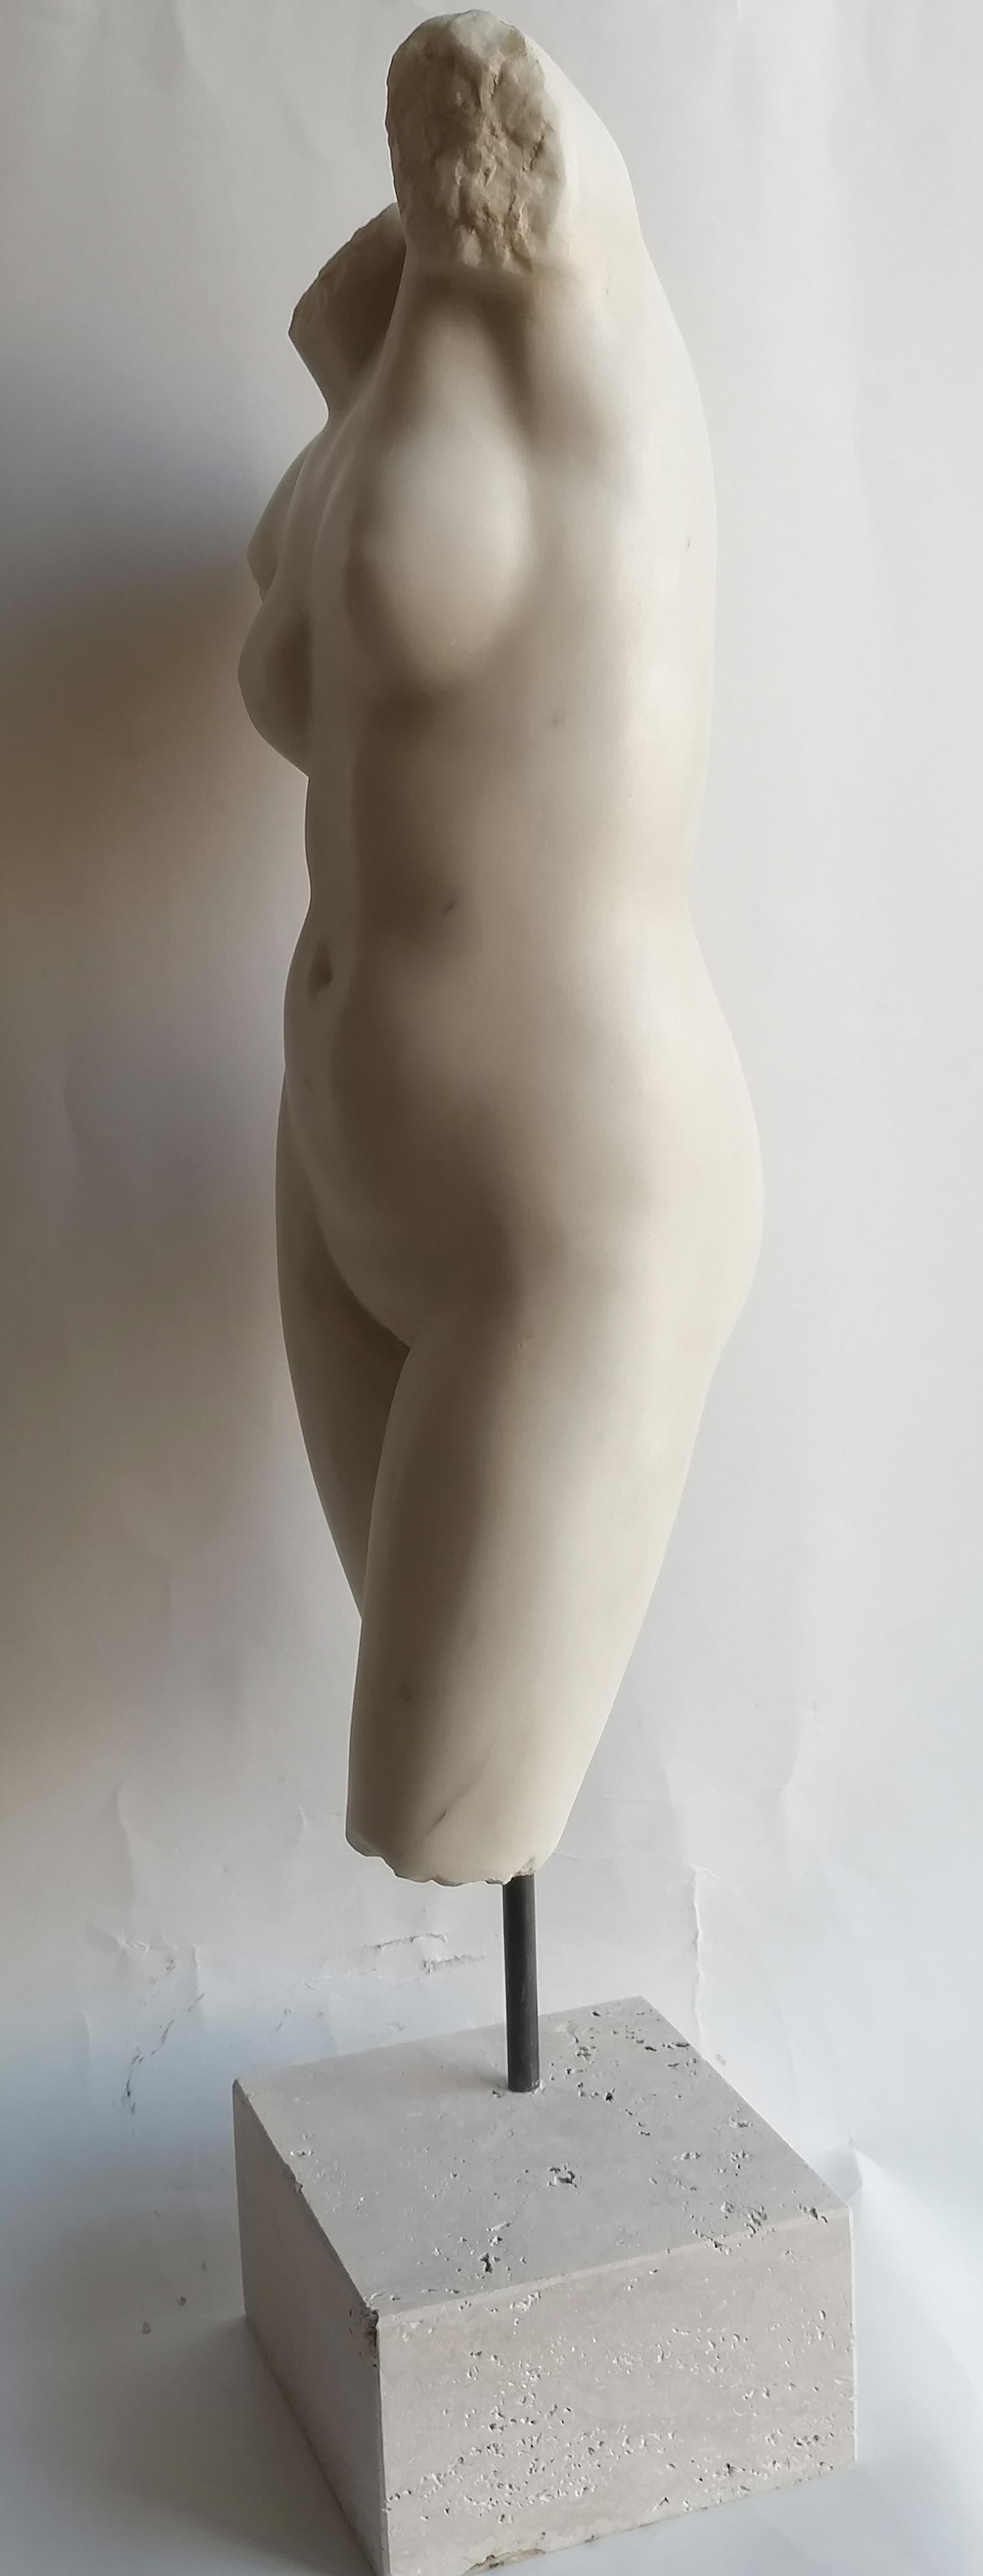 Fait main Torso femminile scolpito su marmo bianco Carrara, fabriqué en Italie en vente